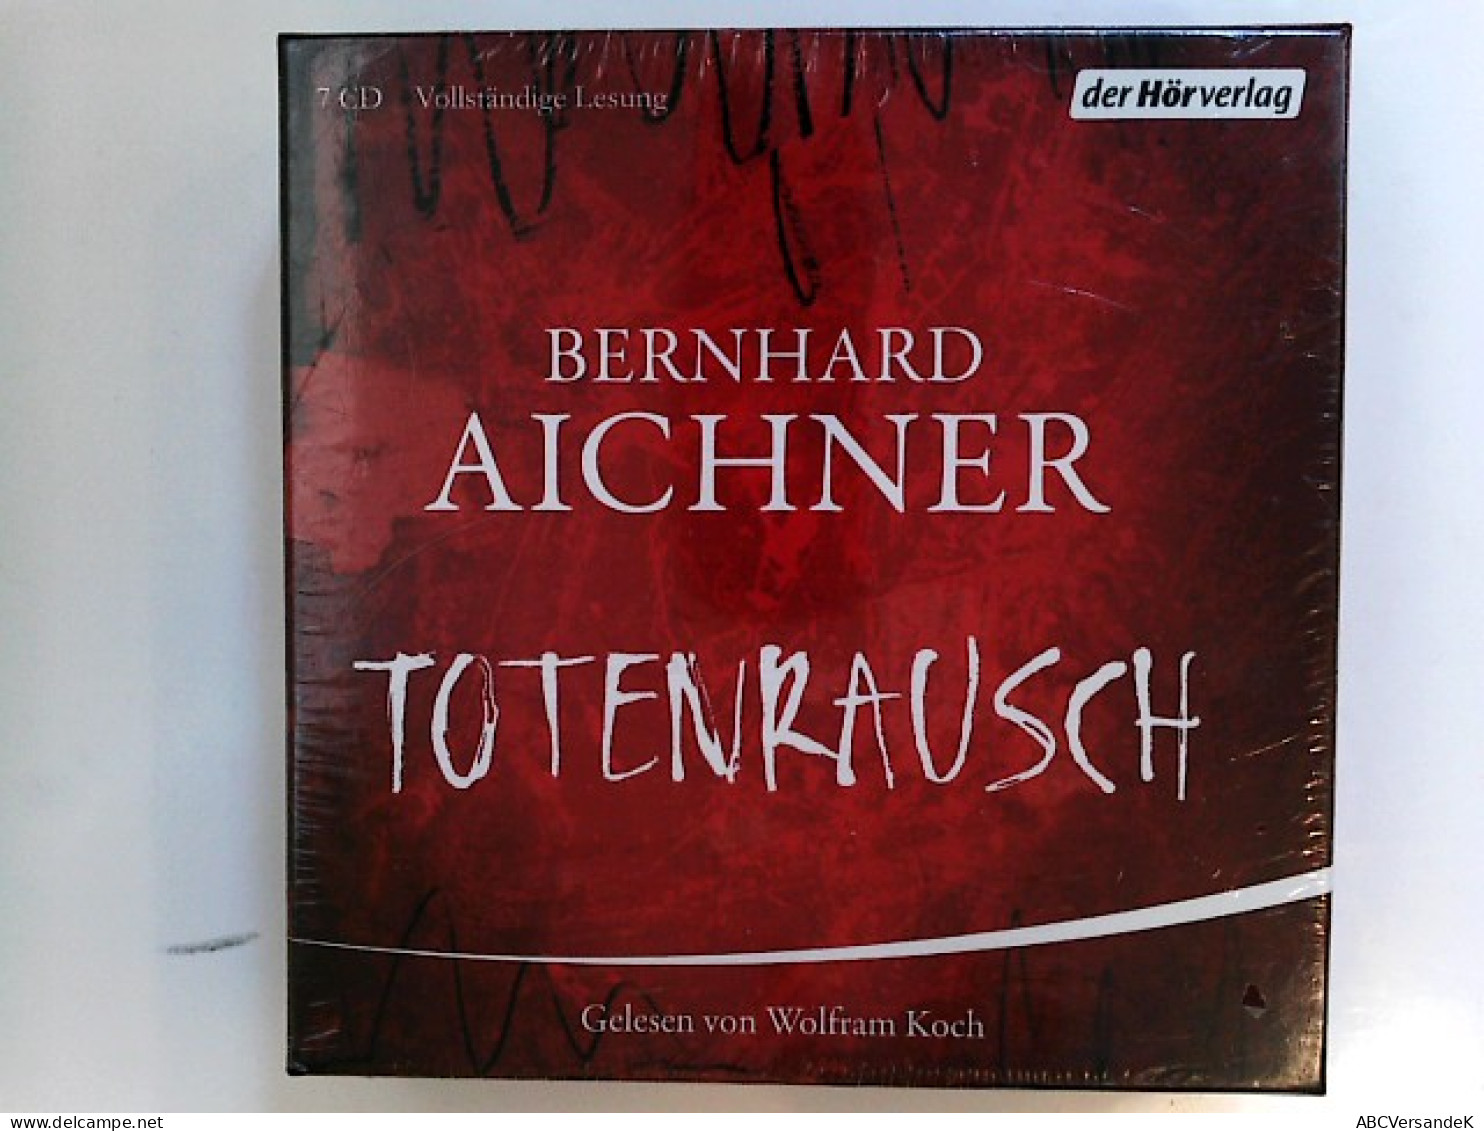 Totenrausch: Thriller (Die Totenfrau-Trilogie, Band 3) - CD